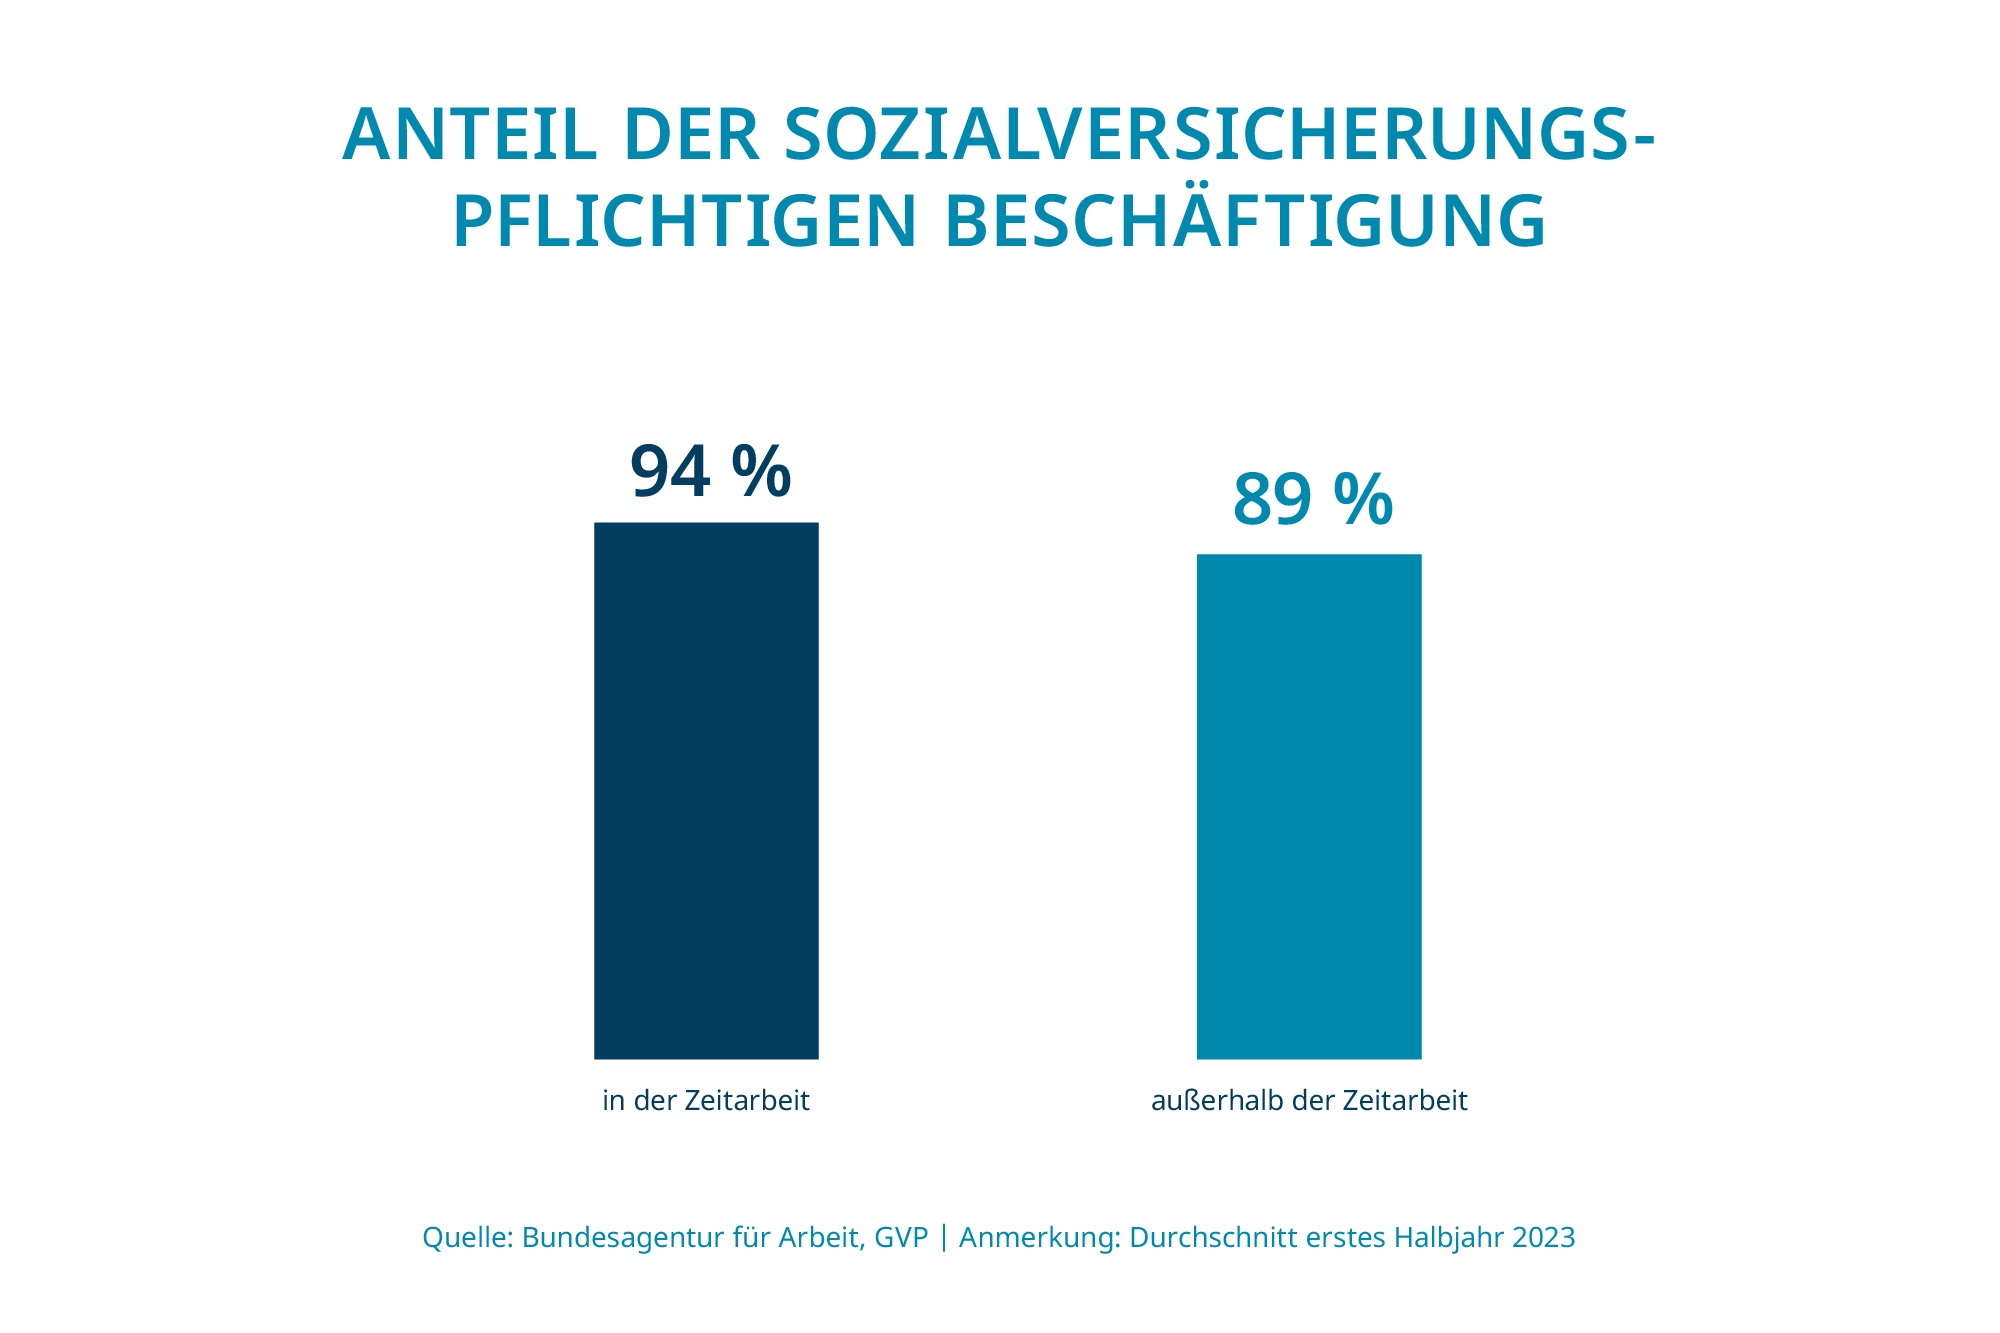 Anteil sozialverischungpflichtige Beschäftigugn in der Zeitarbeit: 94 %, außerhalb der Zeitarbeit 89 %